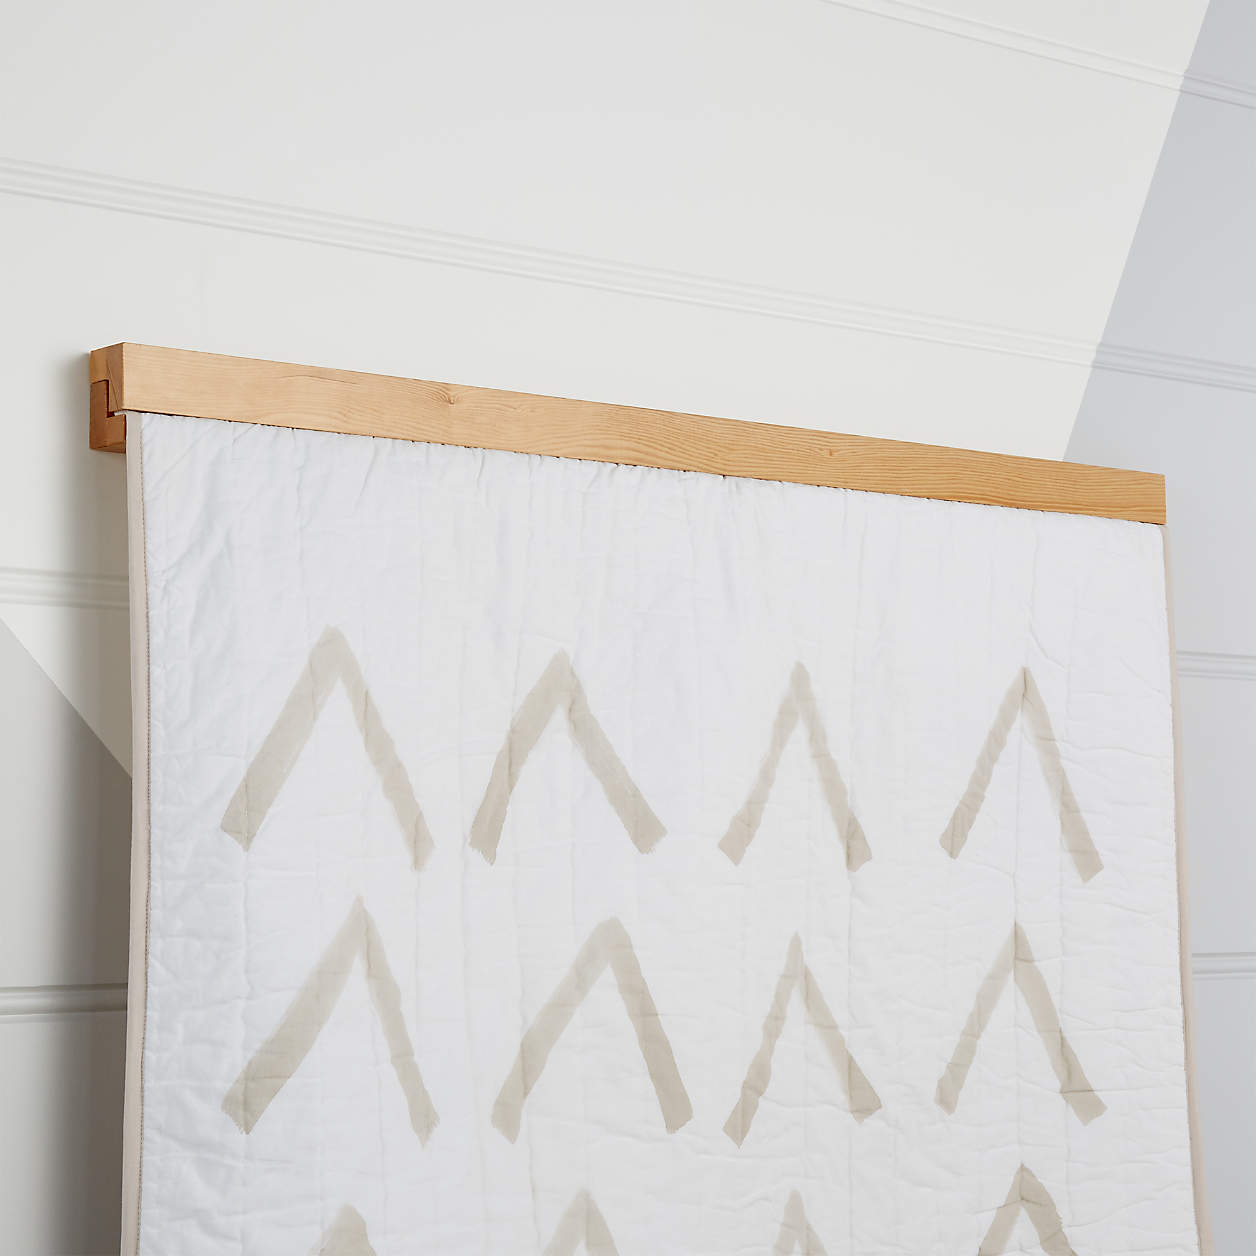 wooden quilt hanger